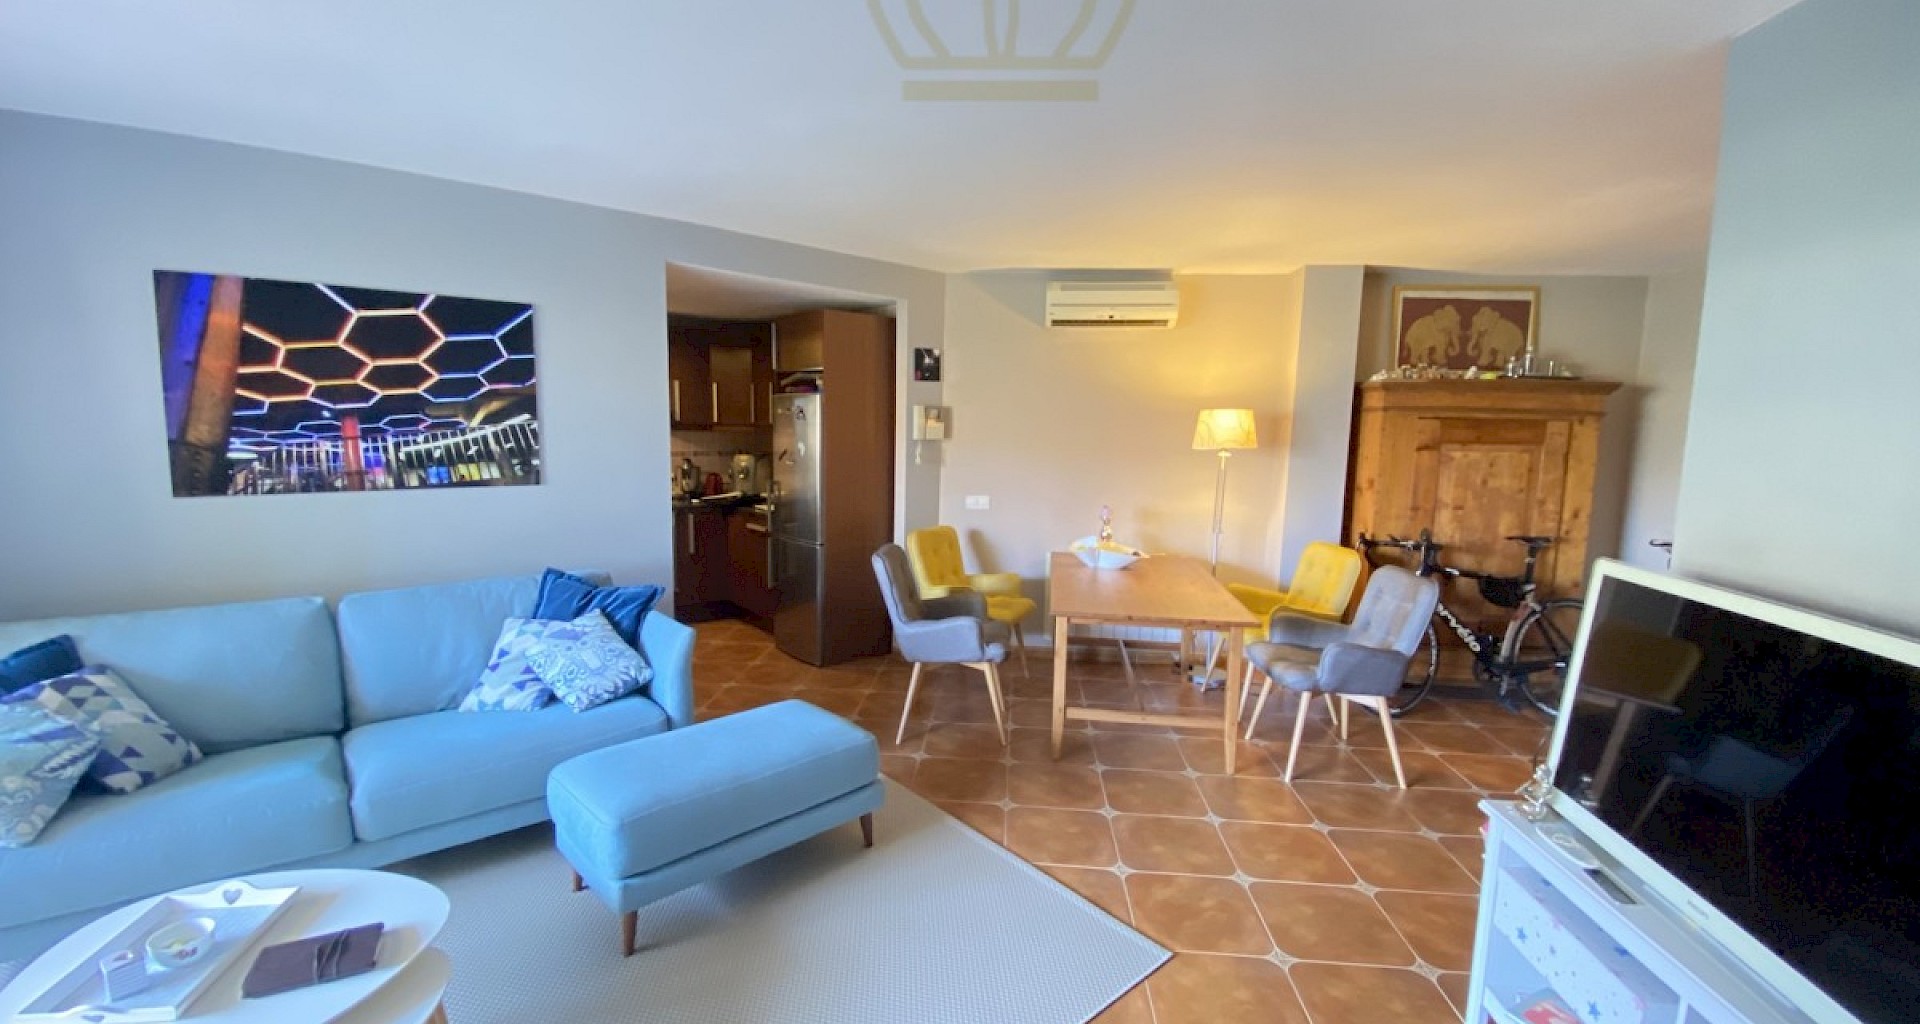 KROHN & LUEDEMANN Bel appartement de vacances à Puigderros près de Palma de Mallorca 